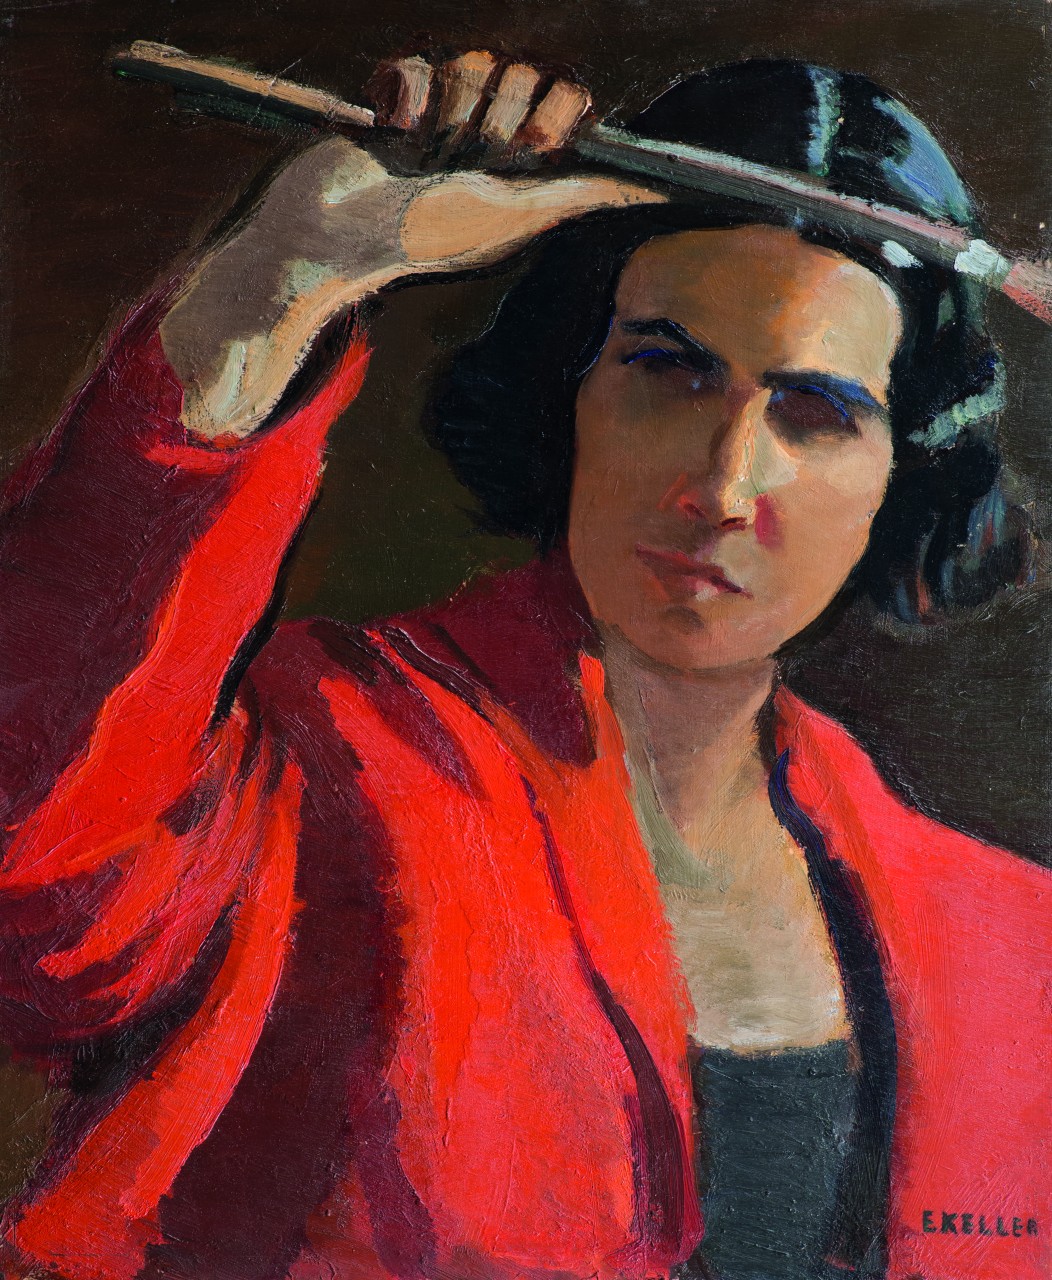 Elisabetta Keller, autoritratto,1920. Olio su tavola 55 x 45,3. © Archivio Elisabetta Keller